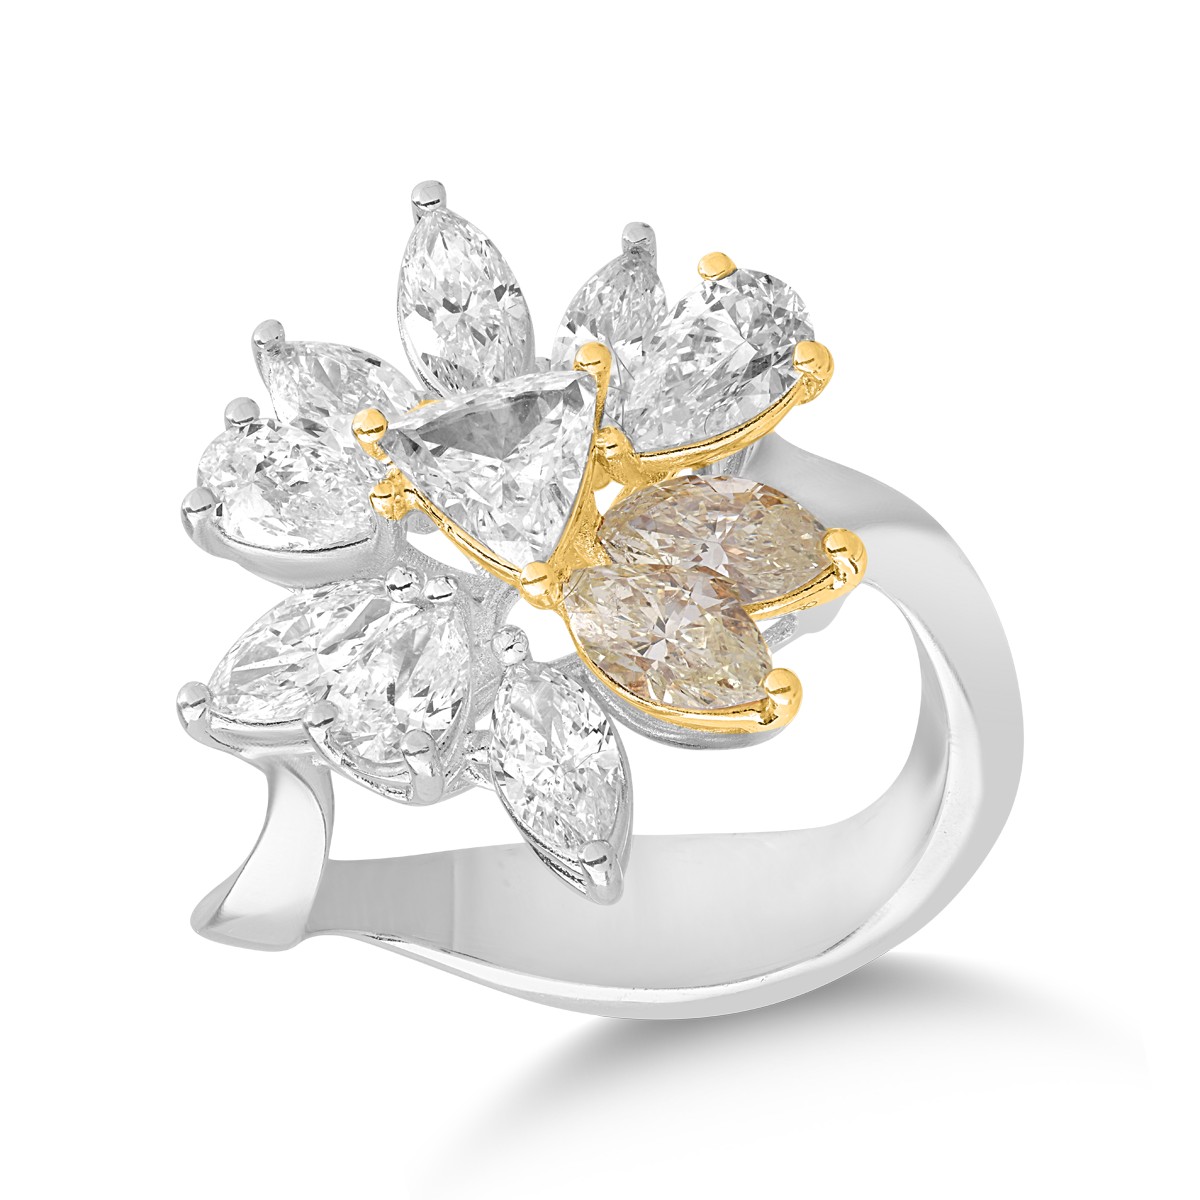 18 karátos fehér-sárga arany gyűrű 1.05 karátos gyémántokkal és 0.58 karátos sárga gyémántokkal